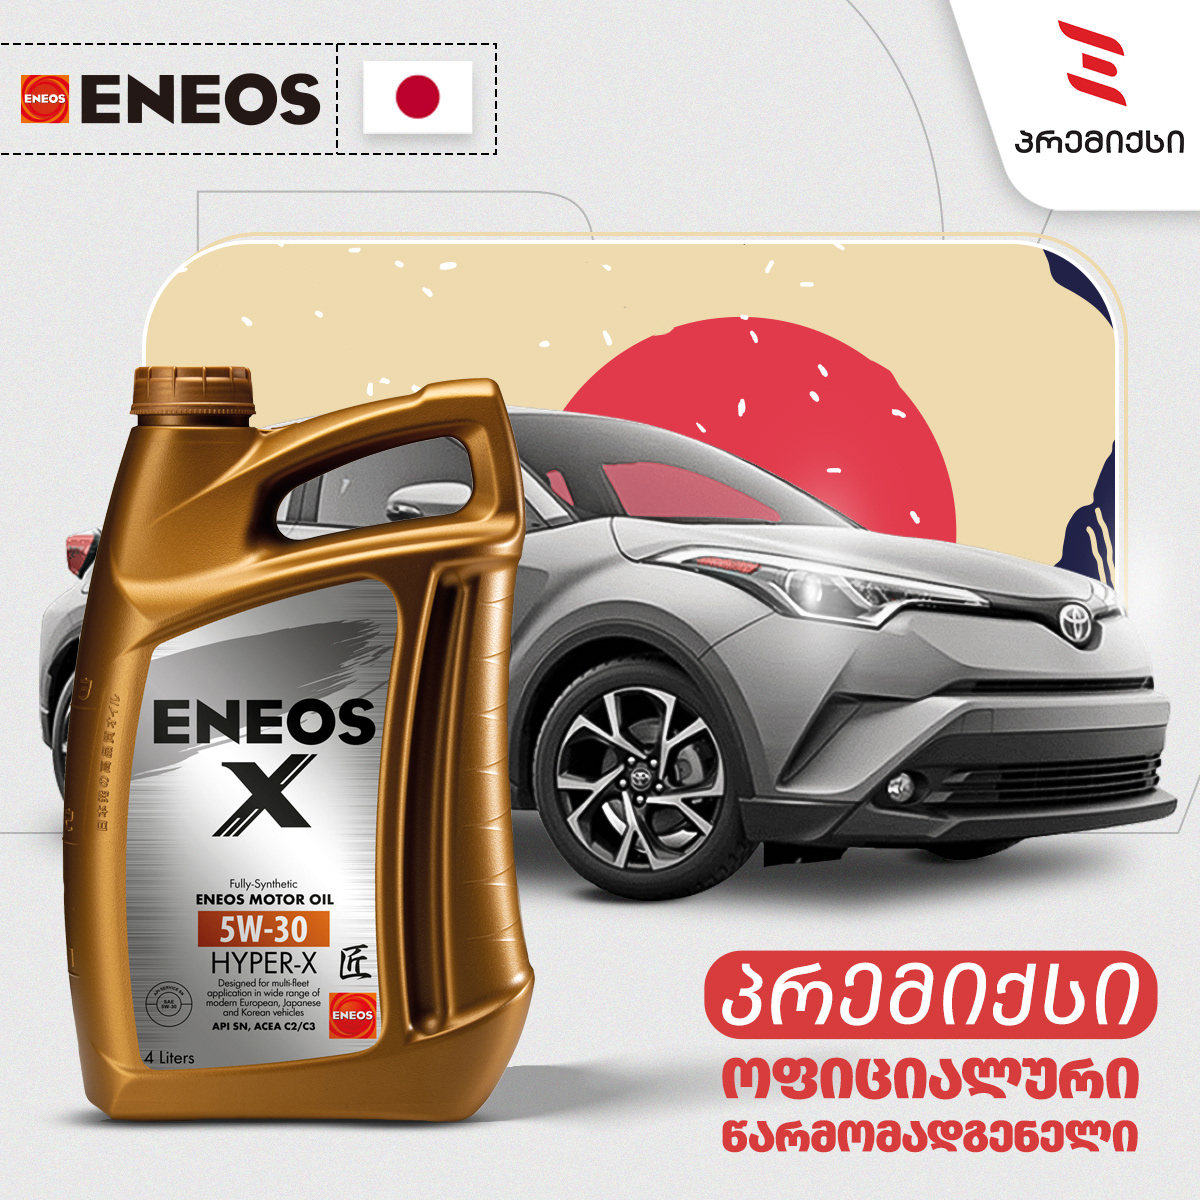 Advertising  banner car eneos graphic design  marketing   oil post social media Socialmedia